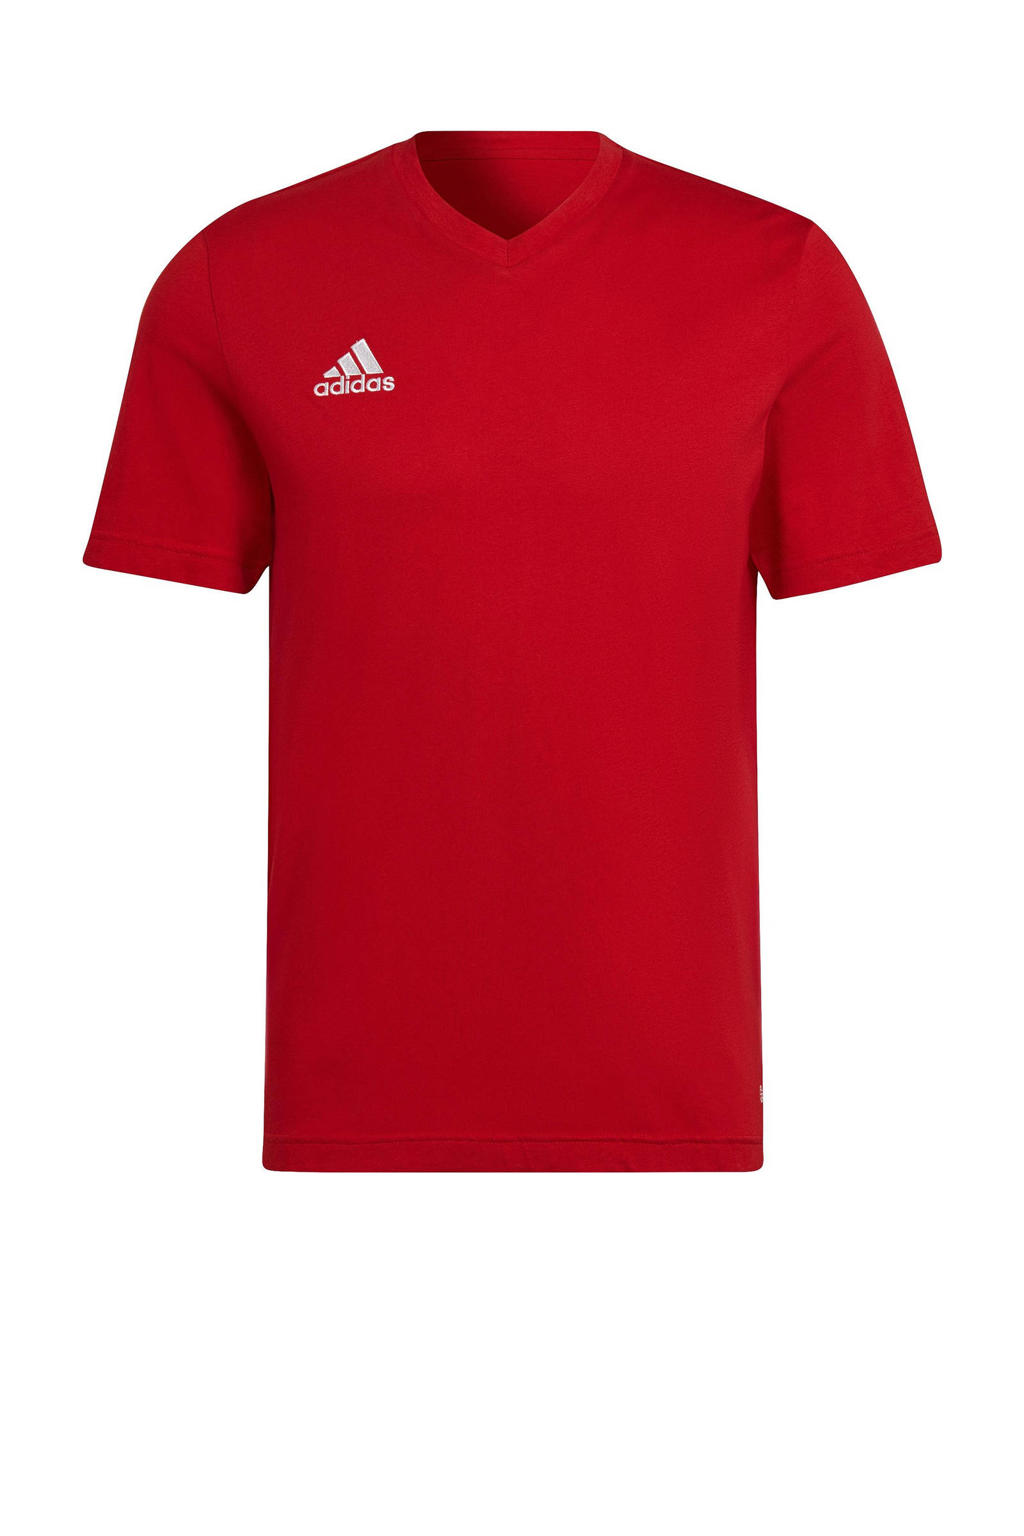 Rode heren adidas Performance Senior sport T-shirt van katoen met logo dessin, korte mouwen en V-hals